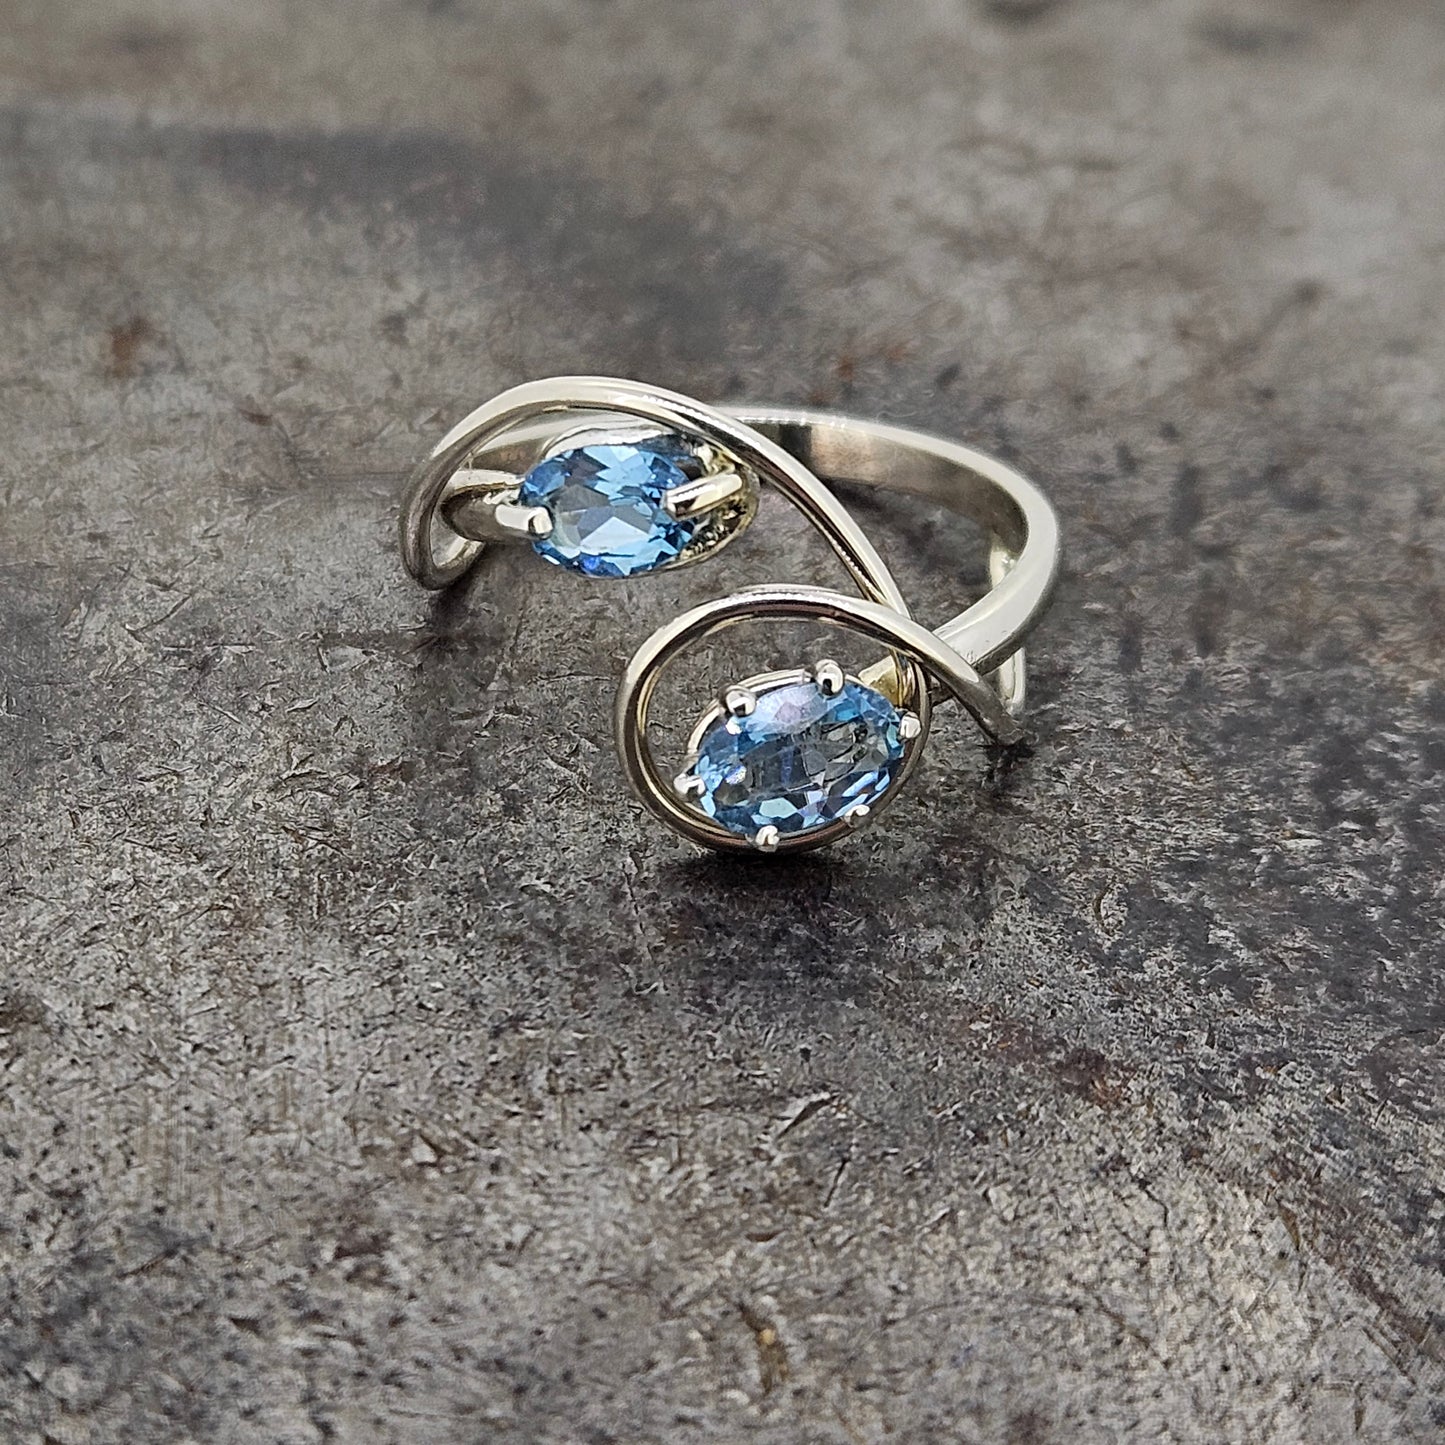 Handmade Blue Topaz Ring Size 7